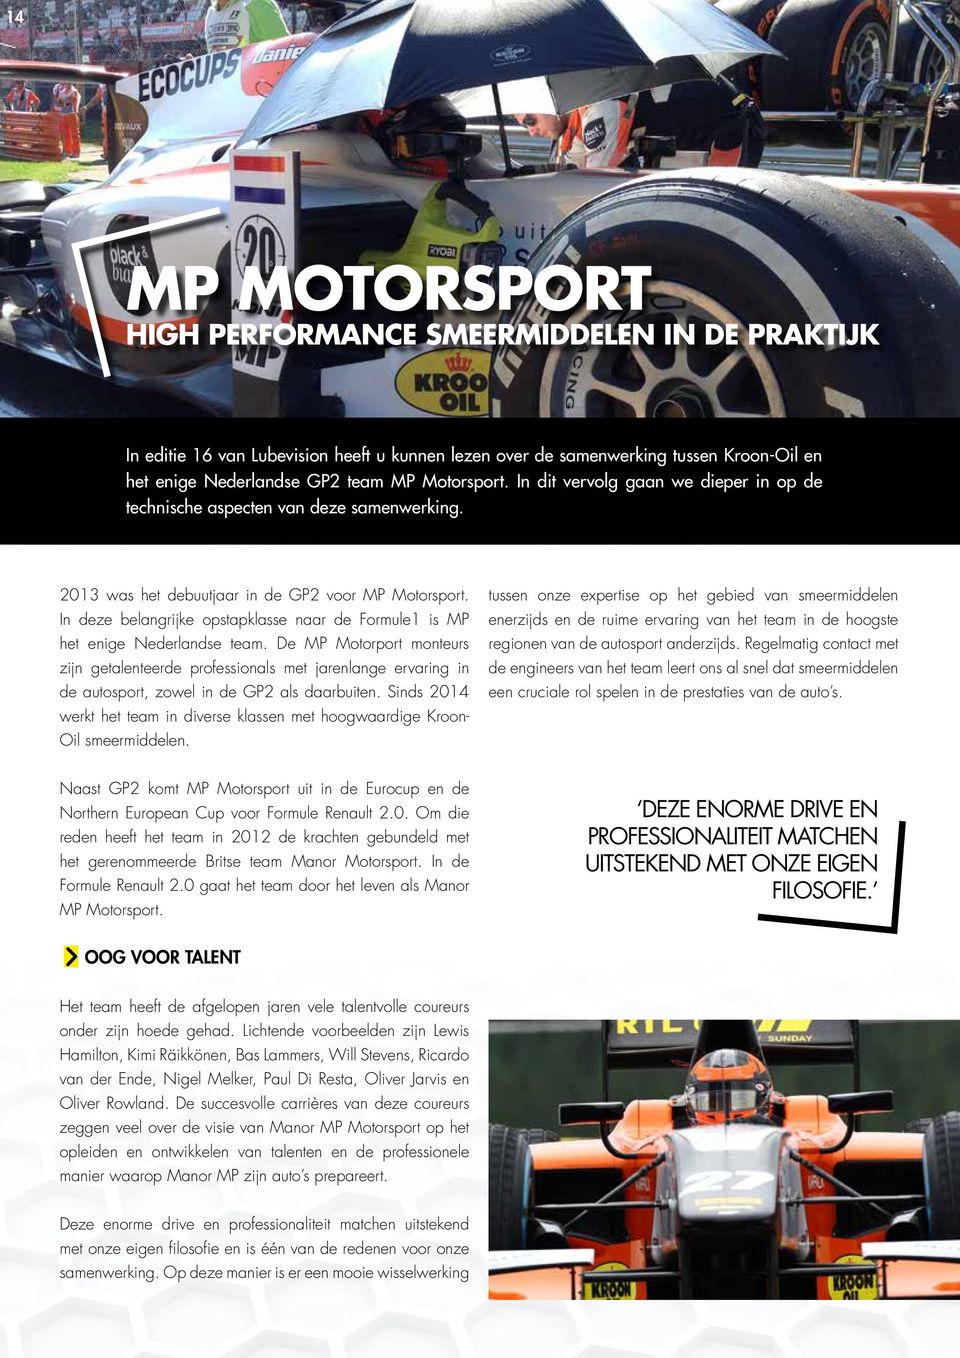 In deze belangrijke opstapklasse naar de Formule1 is MP het enige Nederlandse team.